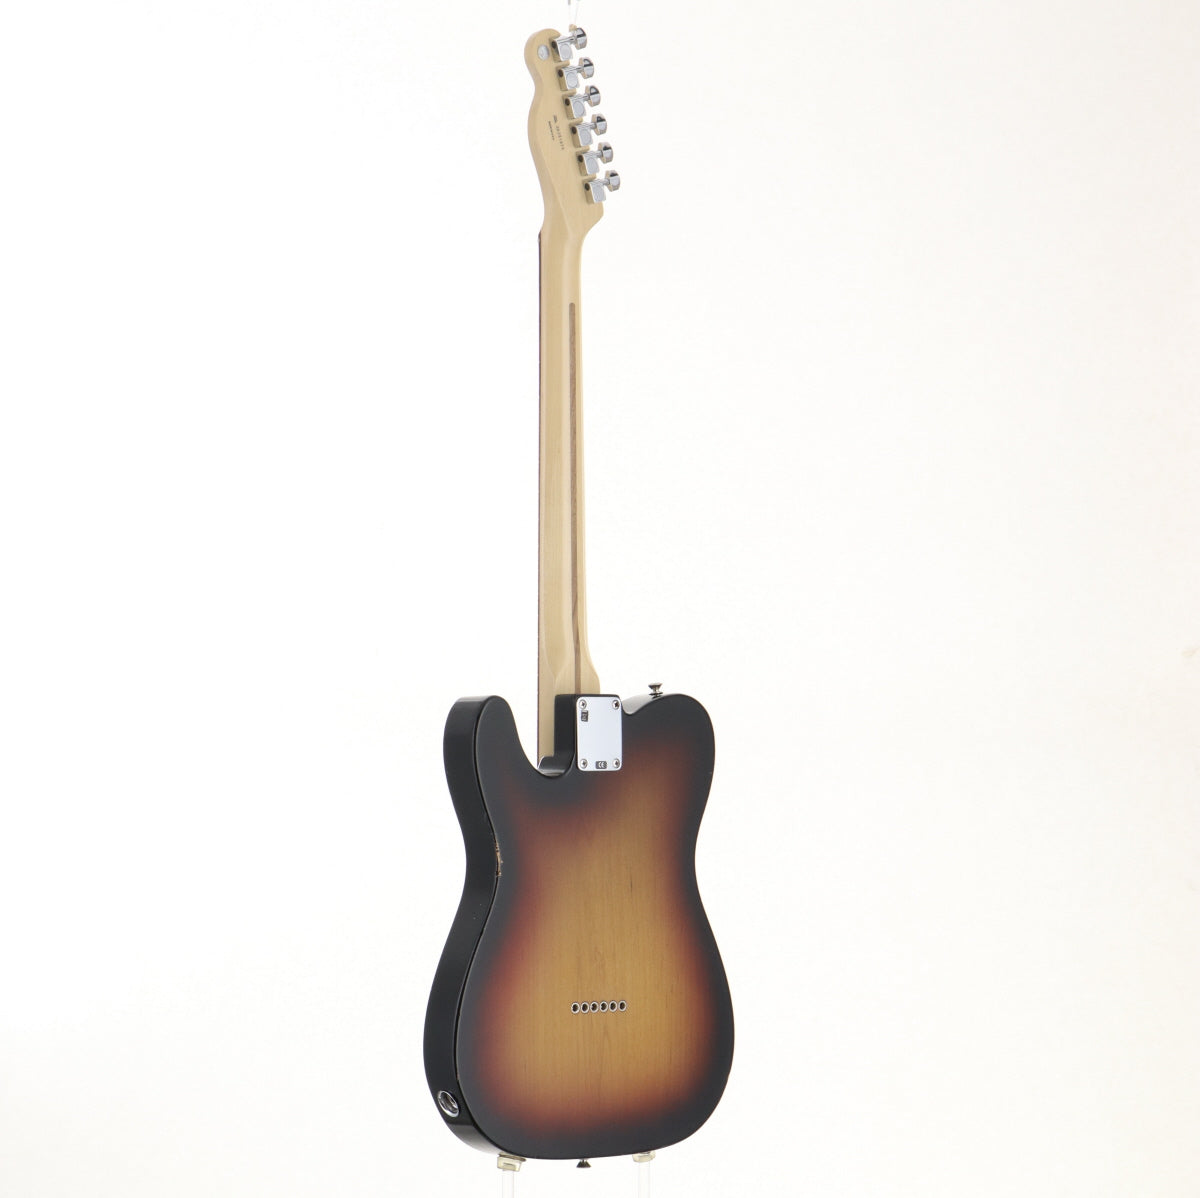 [SN Z6251675] USED Fender USA / Highway One Telecaster Rosewood Fingerboard 3-Color Sunburst [06]